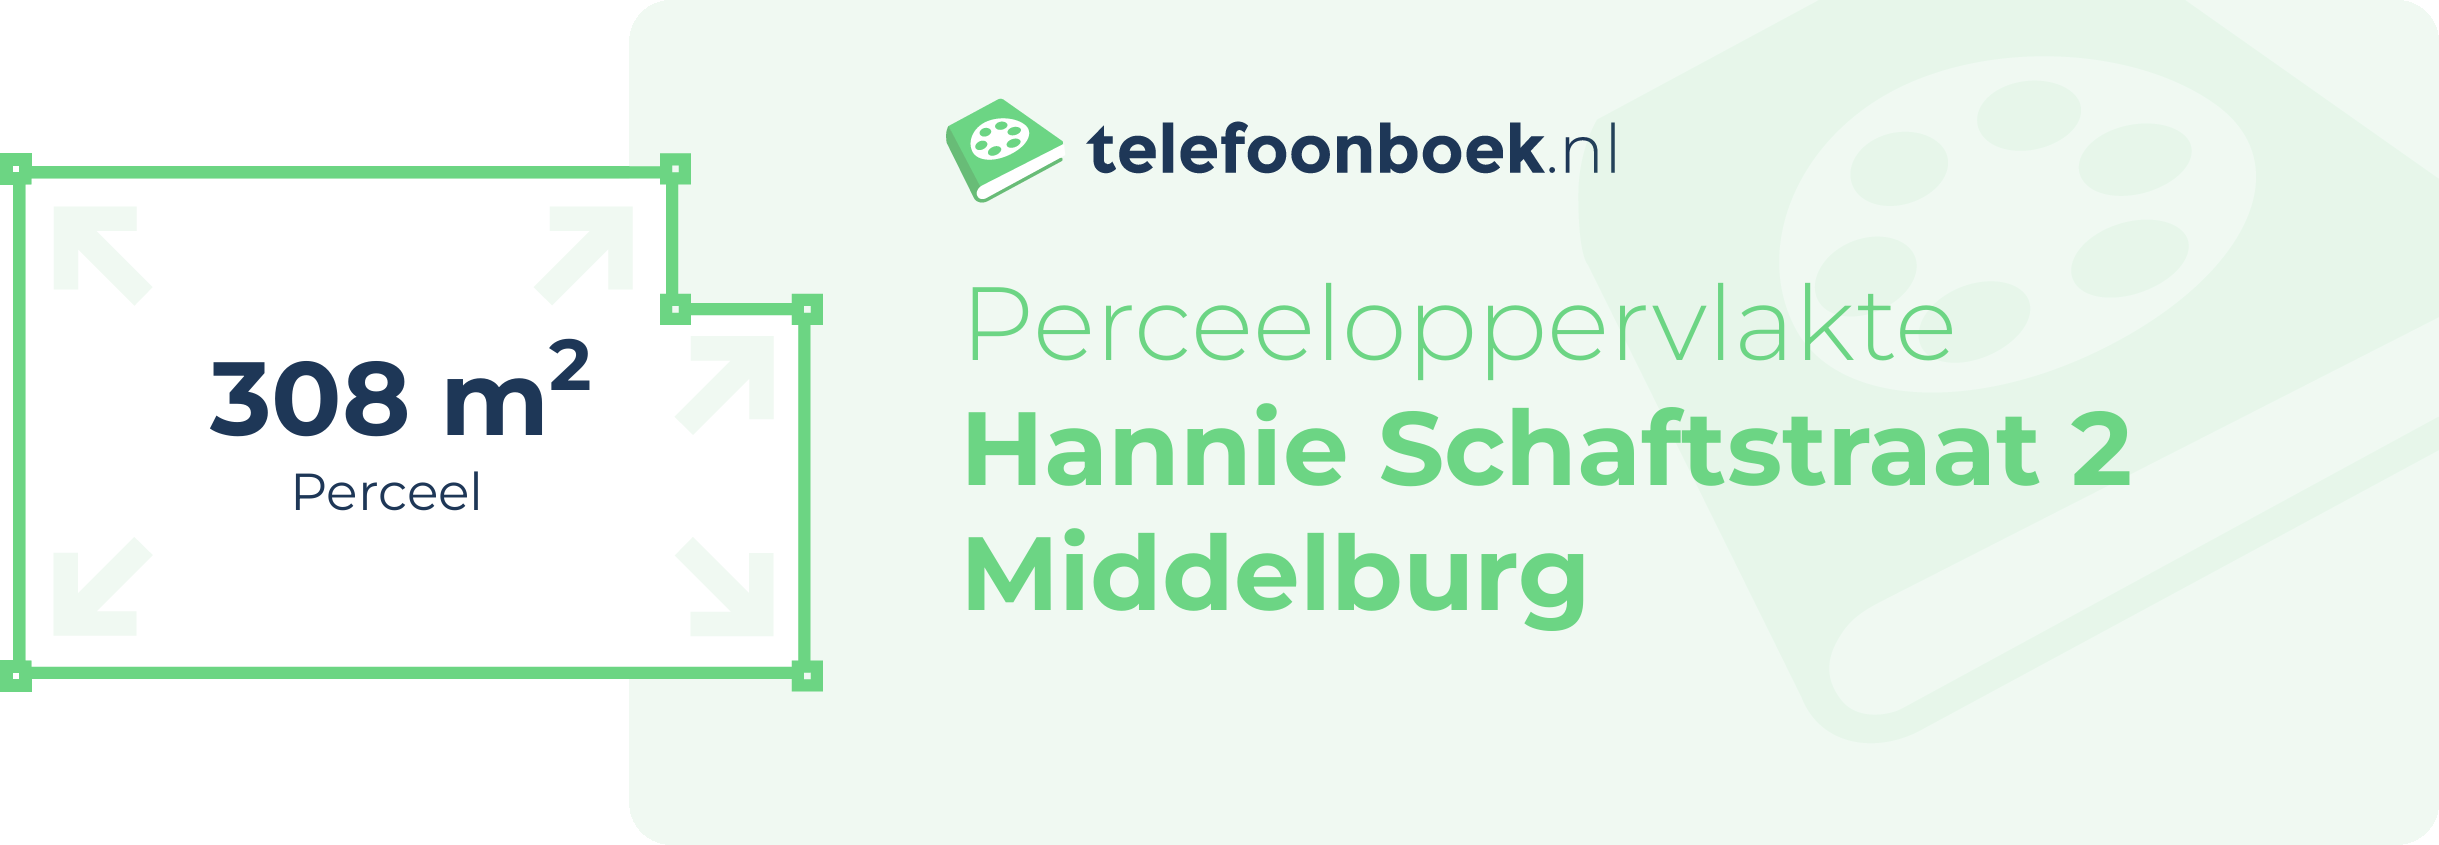 Perceeloppervlakte Hannie Schaftstraat 2 Middelburg